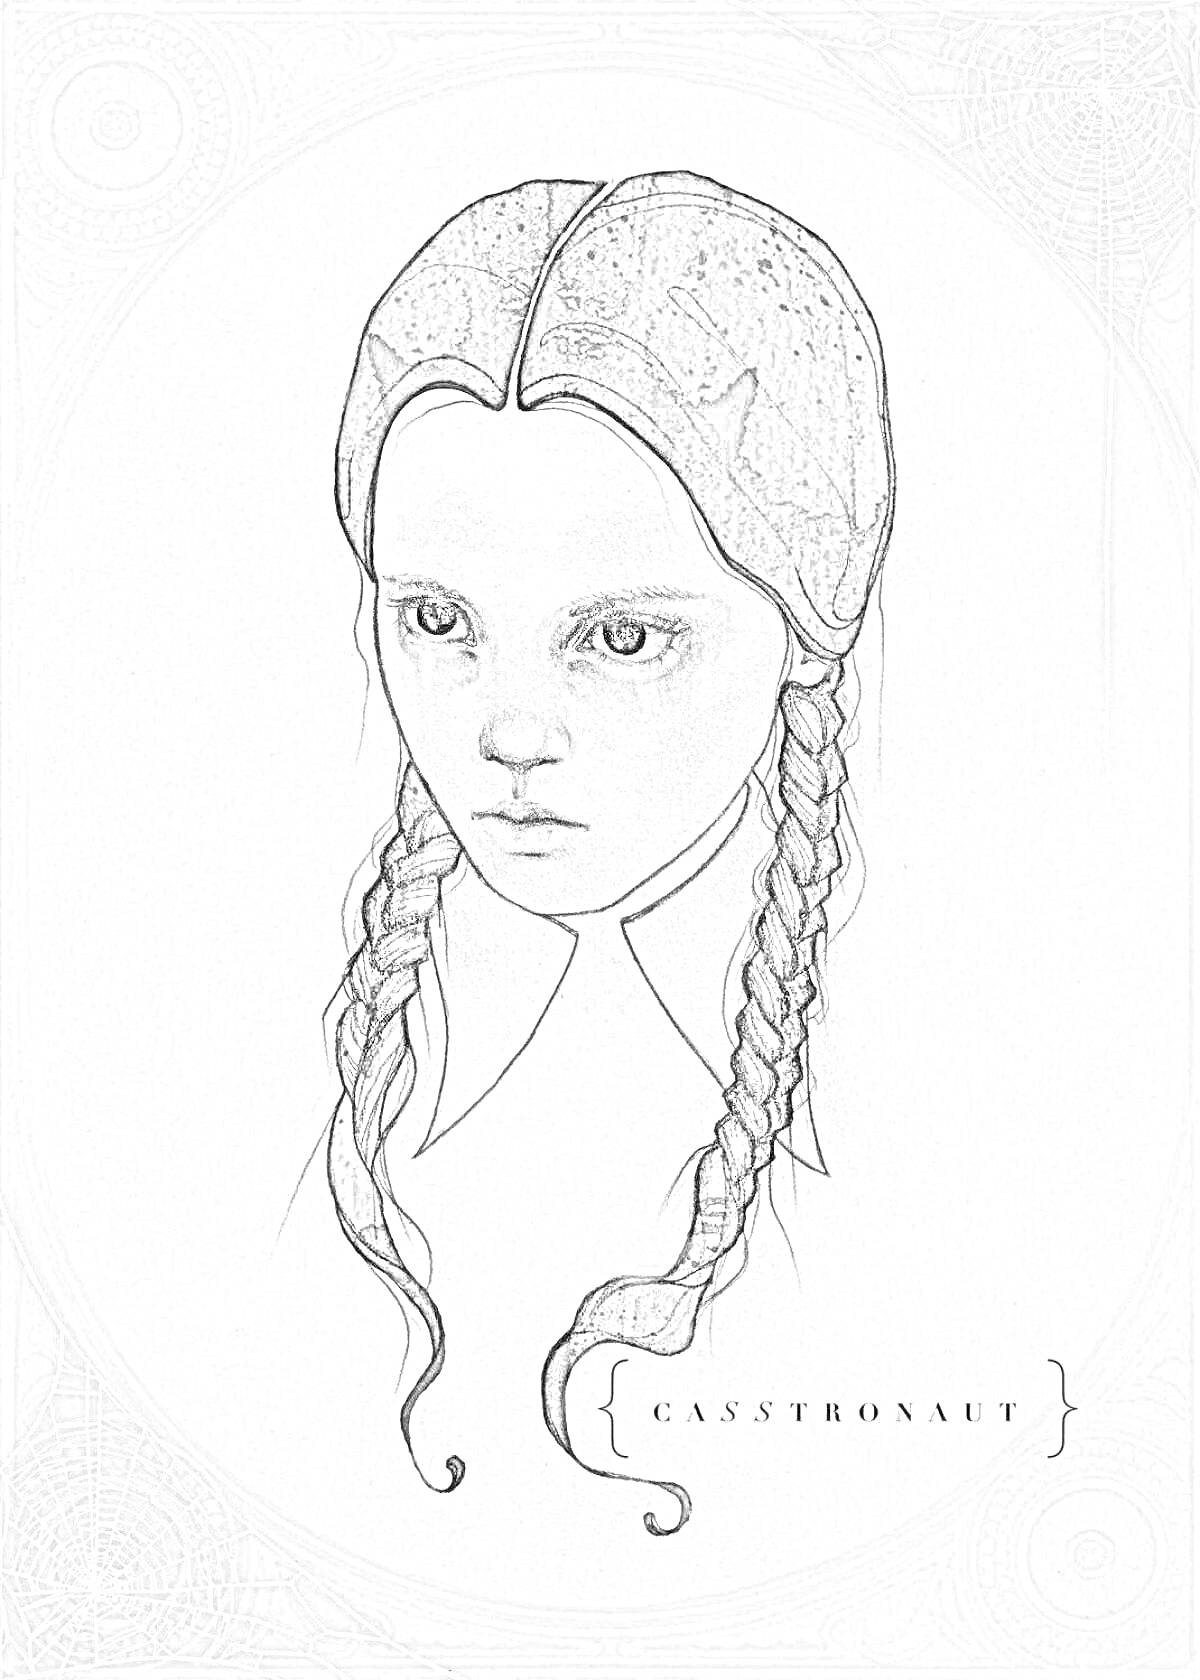 Раскраска Портрет персонажа из сериала Уэнсдей с двумя косичками, в белом воротничке на сером фоне с паутиной